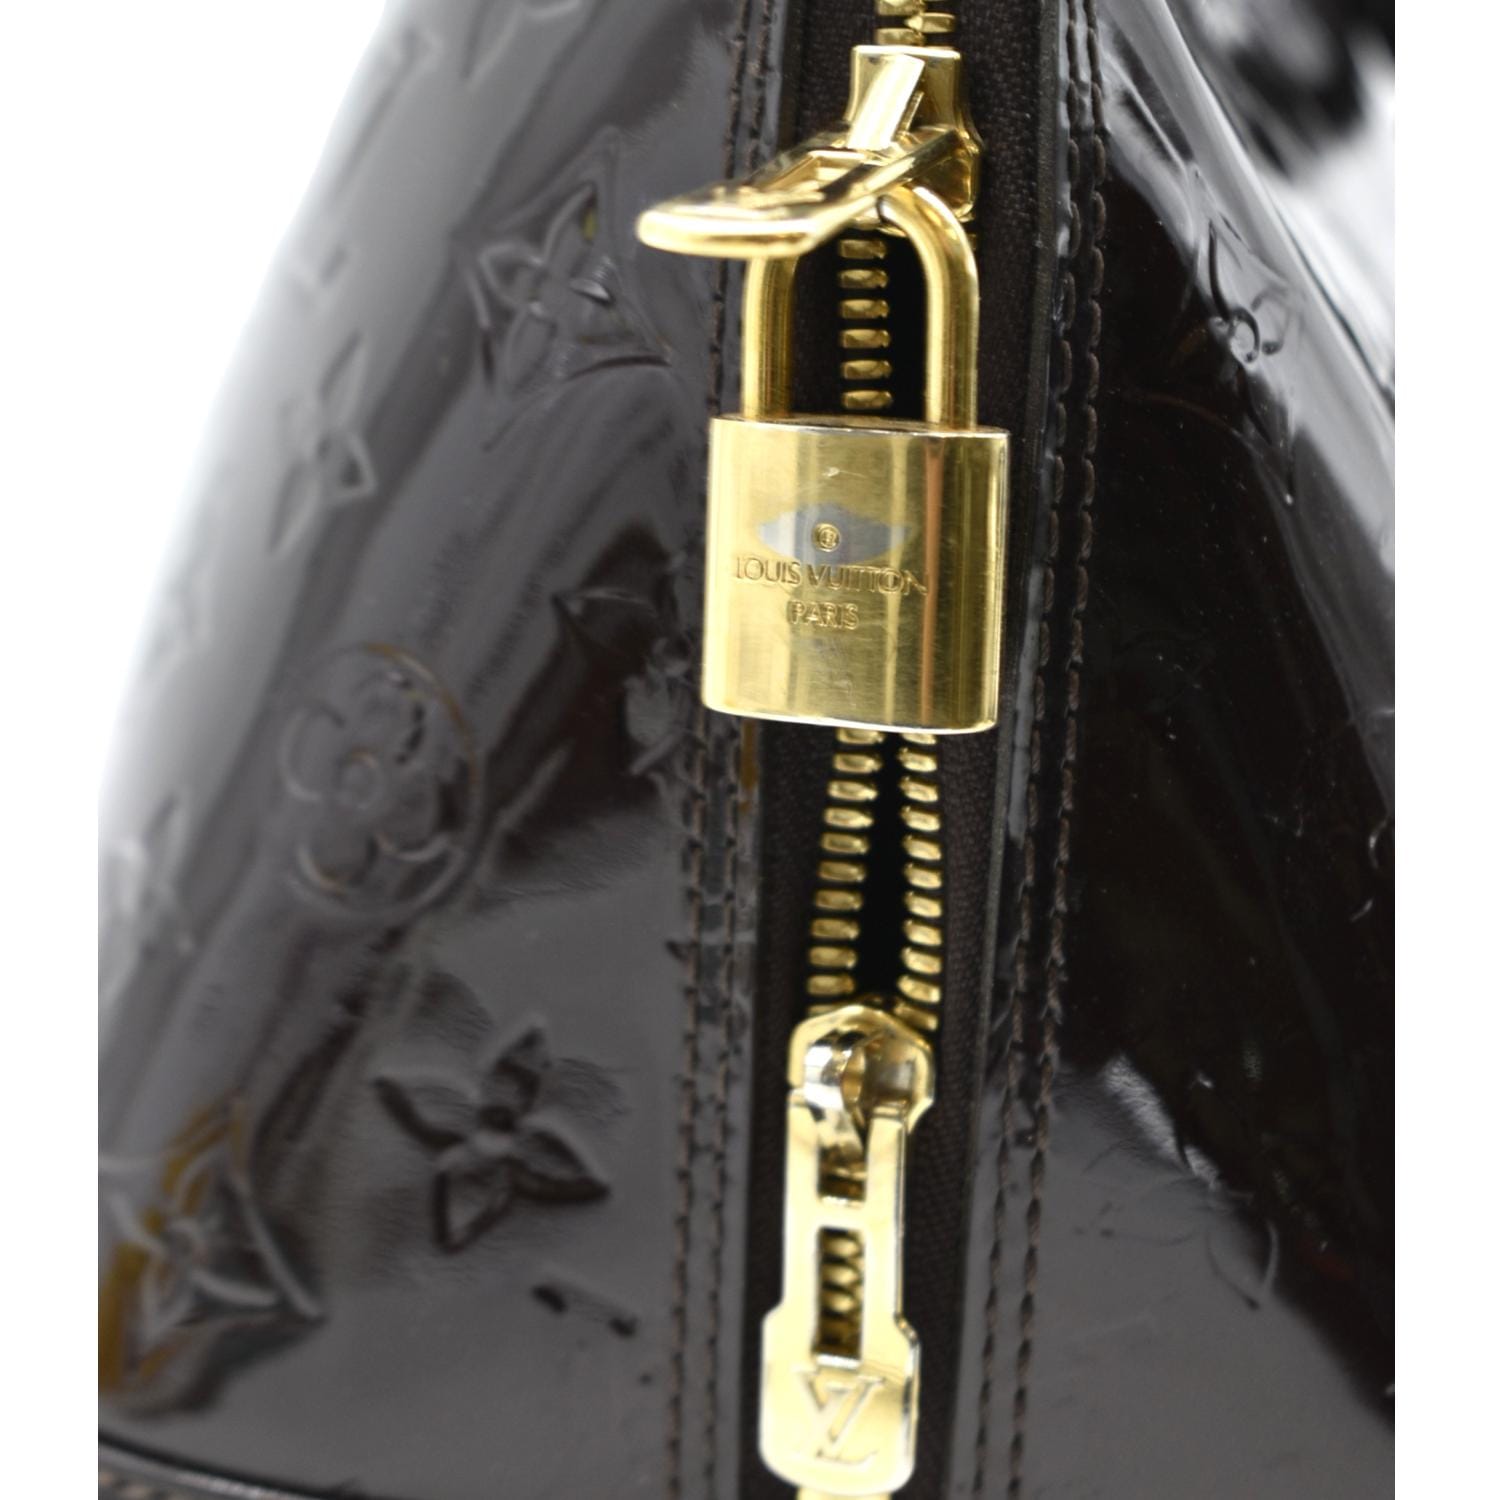 Louis Vuitton Monogram Vernis Alma GM - ShopStyle Satchels & Top Handle Bags